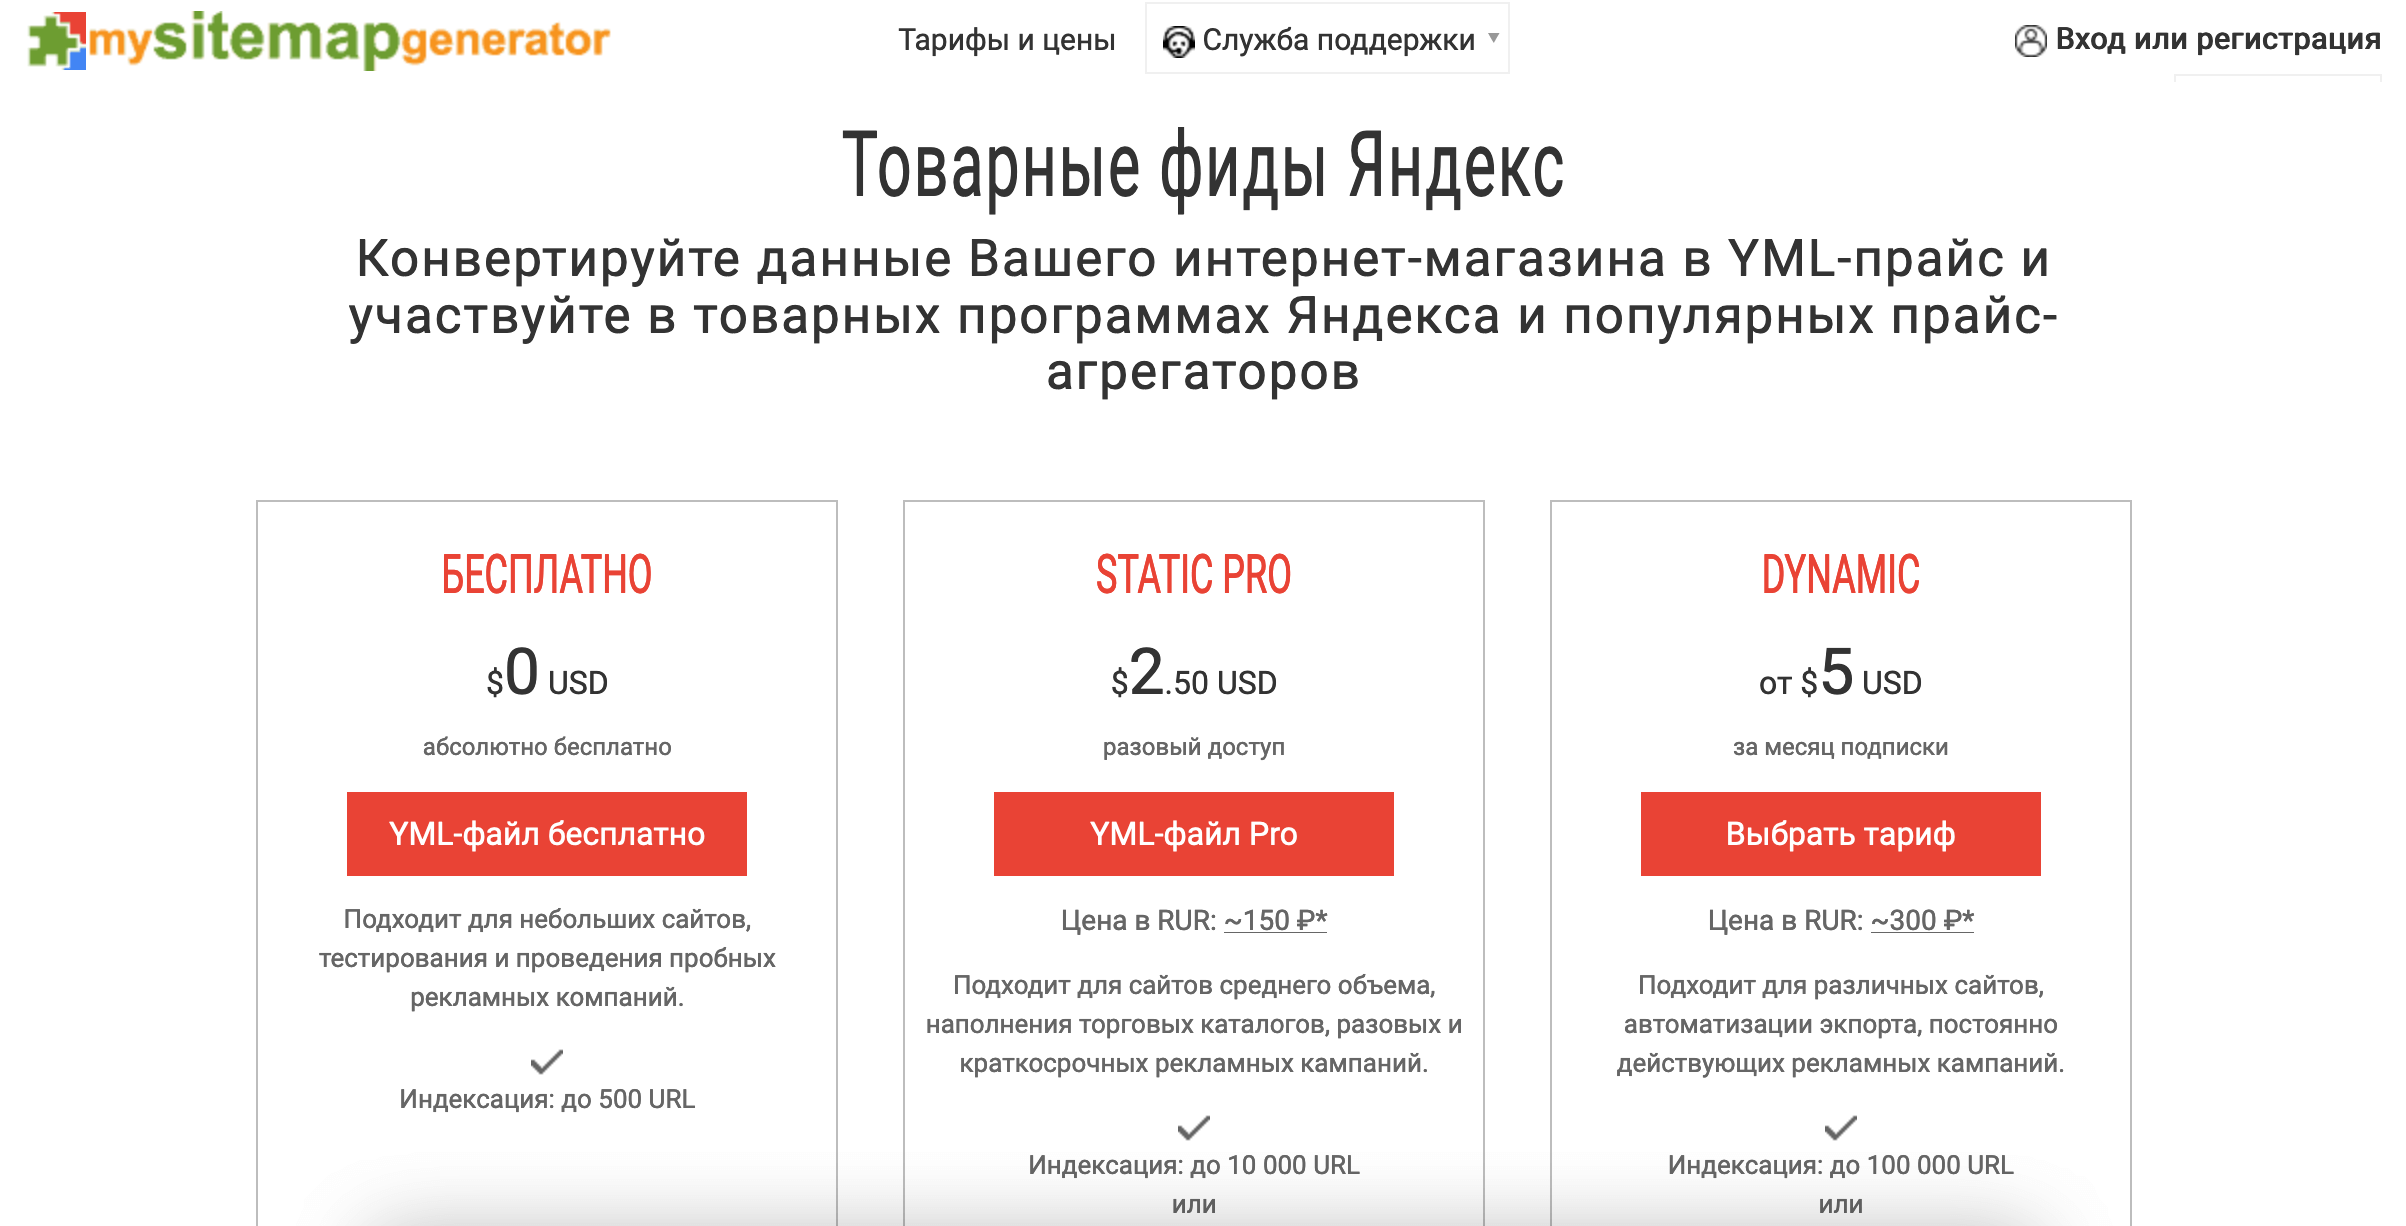 Пример генератора фидов для сервисов «Яндекса»